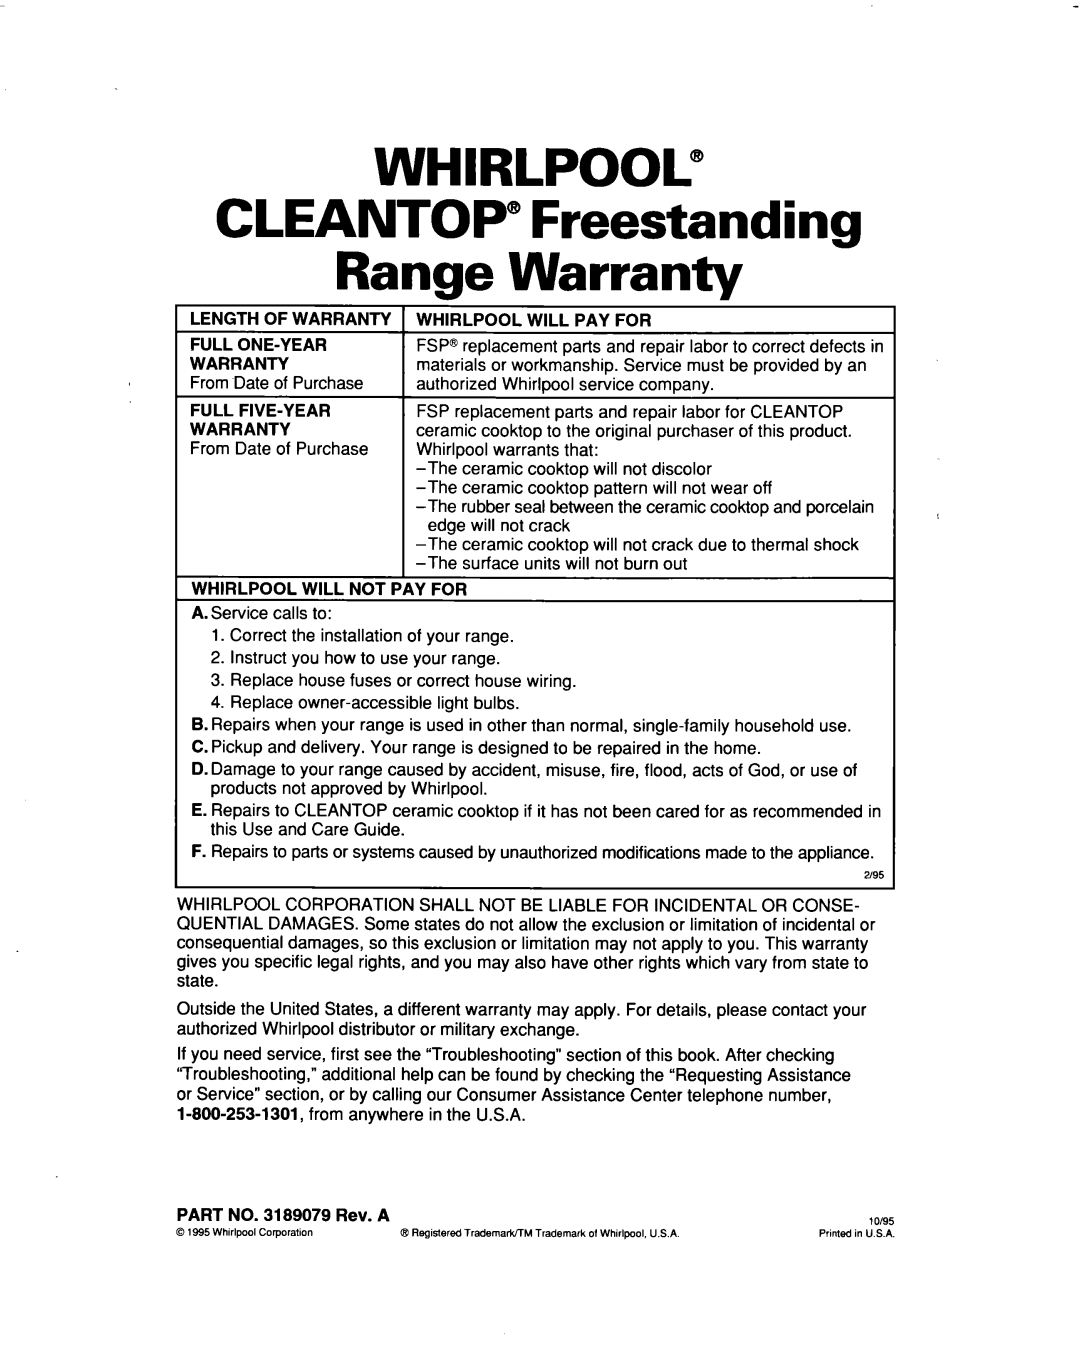 Whirlpool RF3661XD warranty WHIRLPOOL@ CLEANTOP” Freestanding Range Warranty 